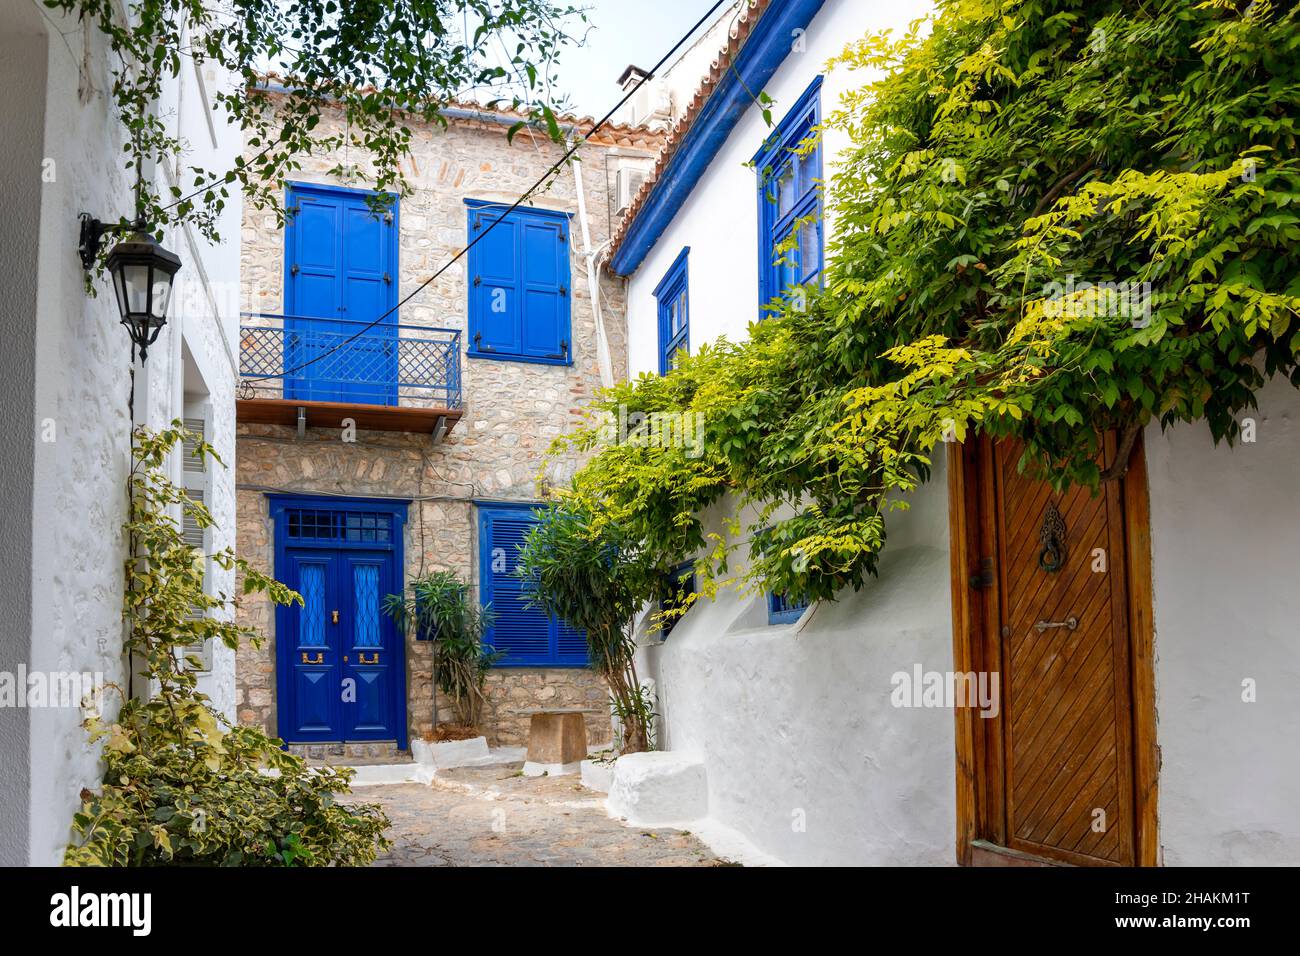 Une rue pittoresque de maisons blanchies à la chaux et de boutiques dans le village de la petite île grecque d'Hydra, en Grèce. Banque D'Images